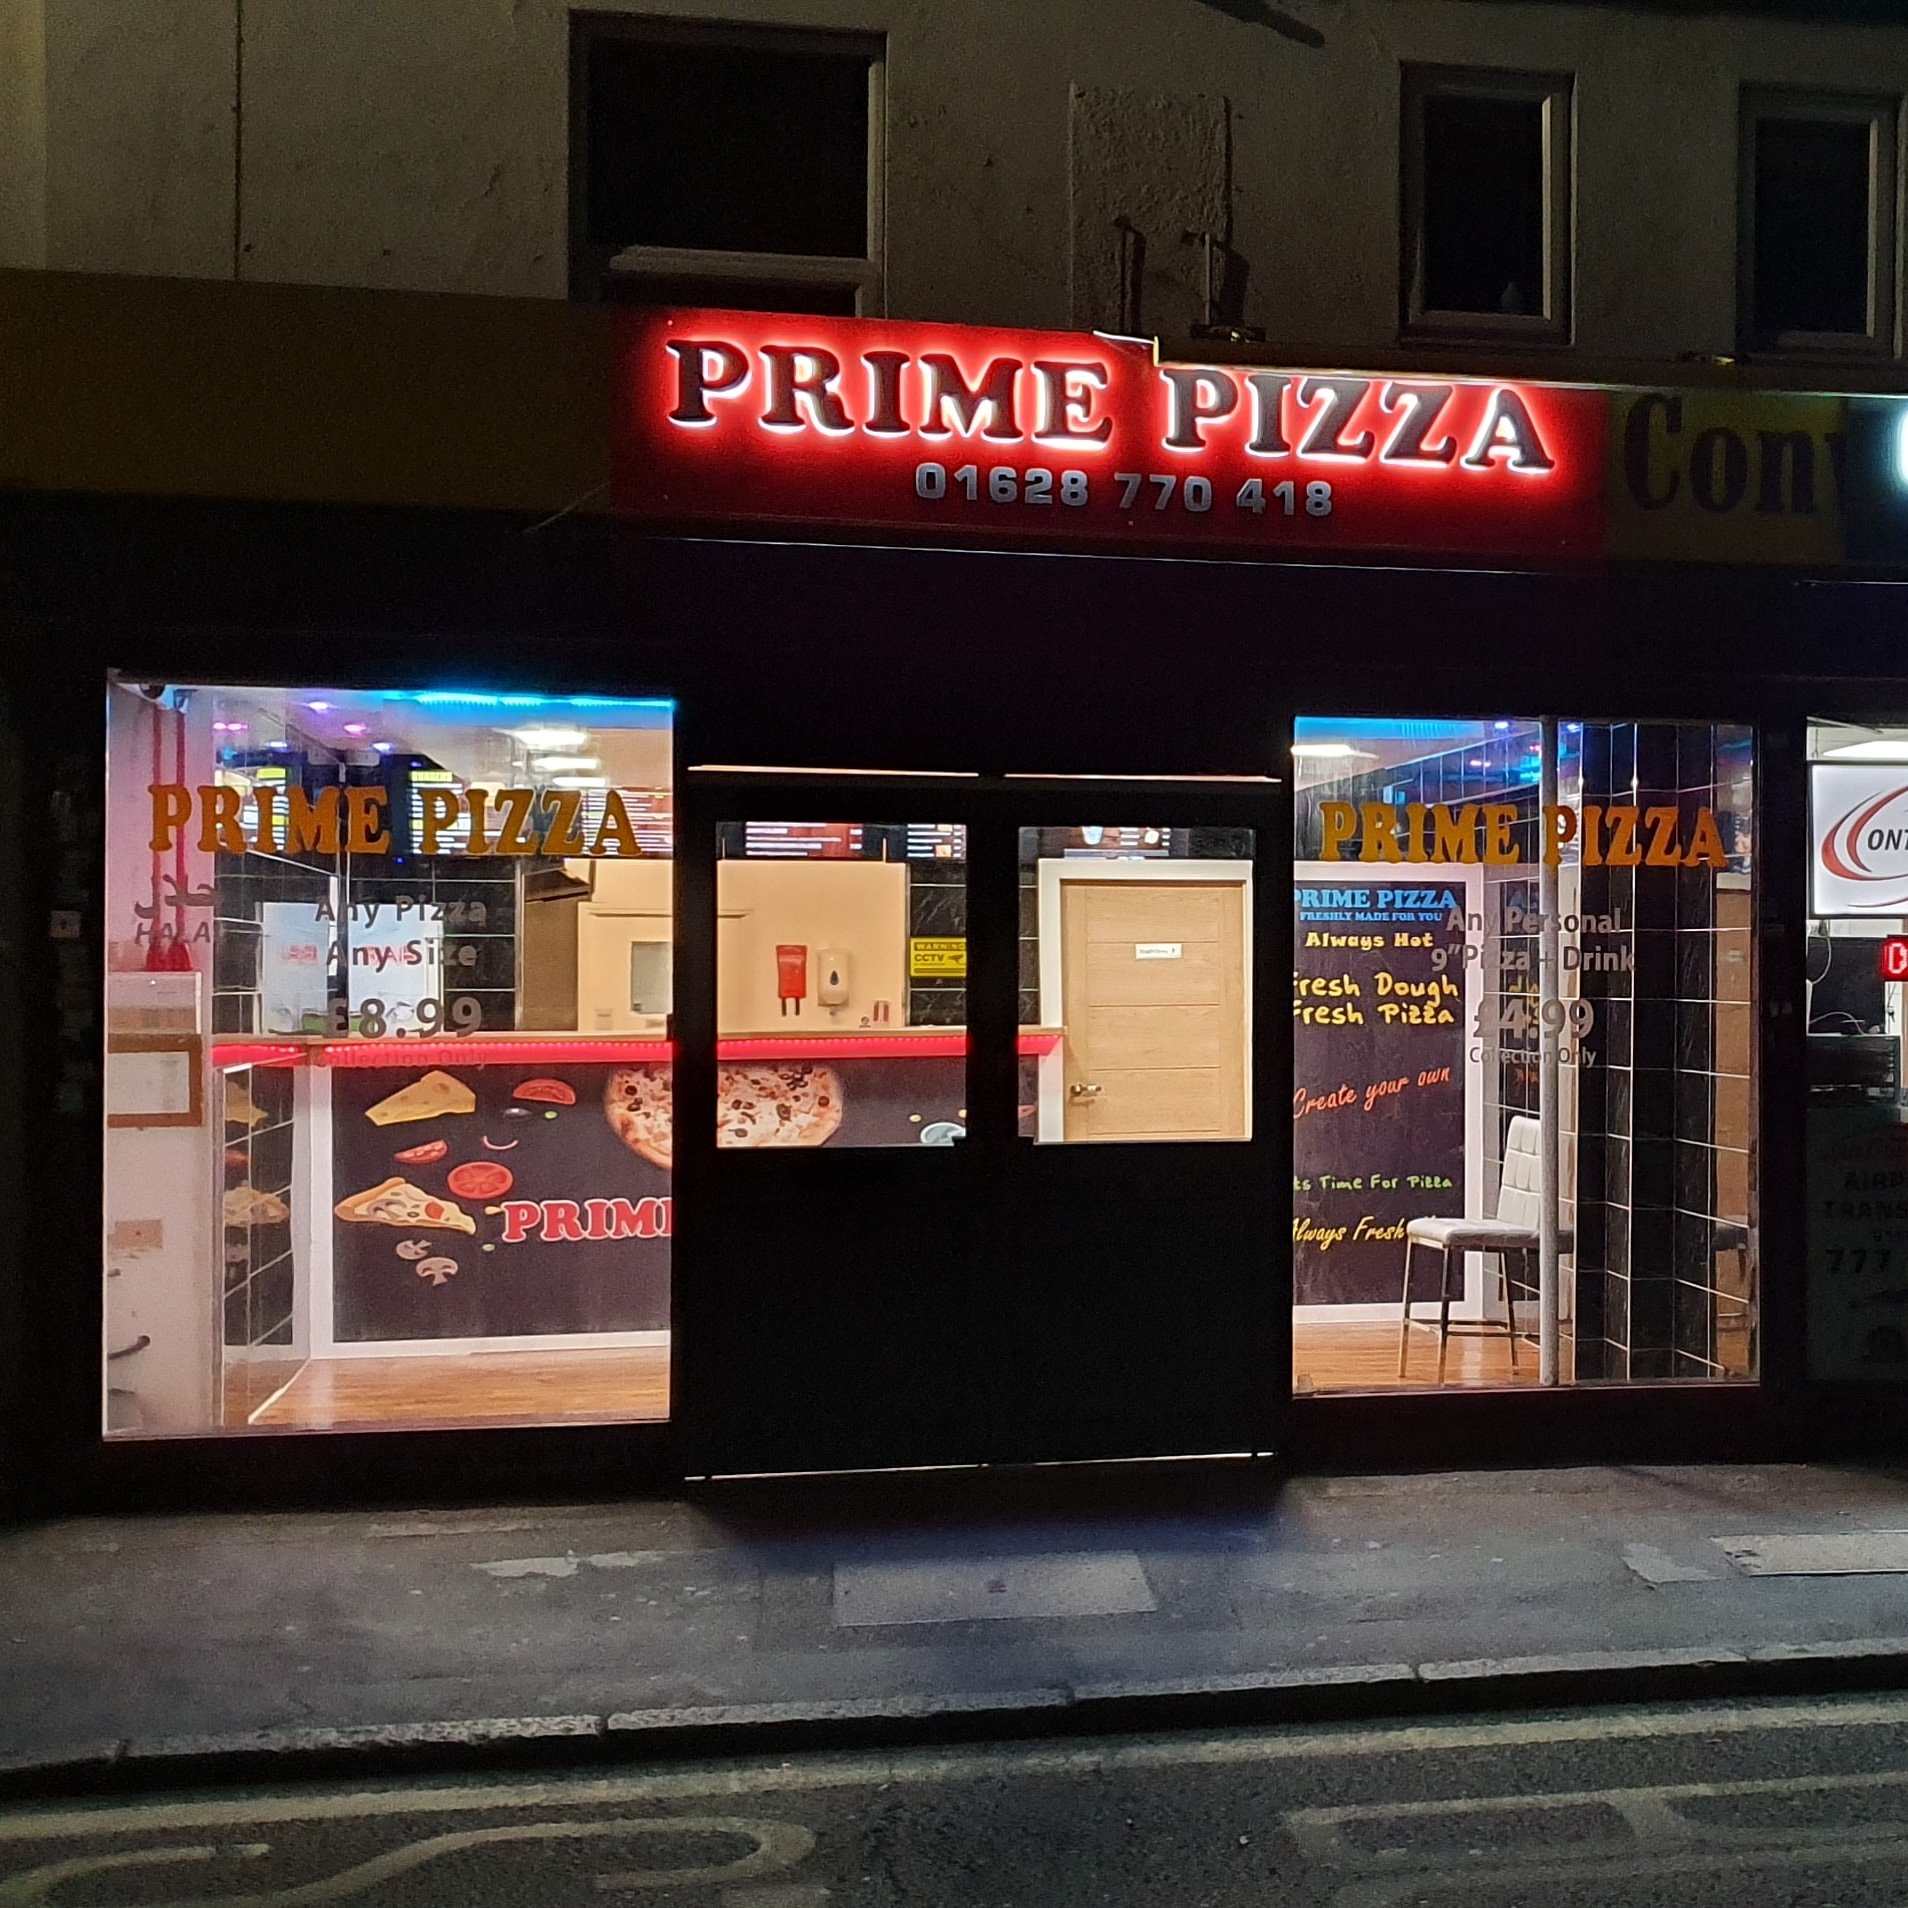 Prime Pizza Maidenhead